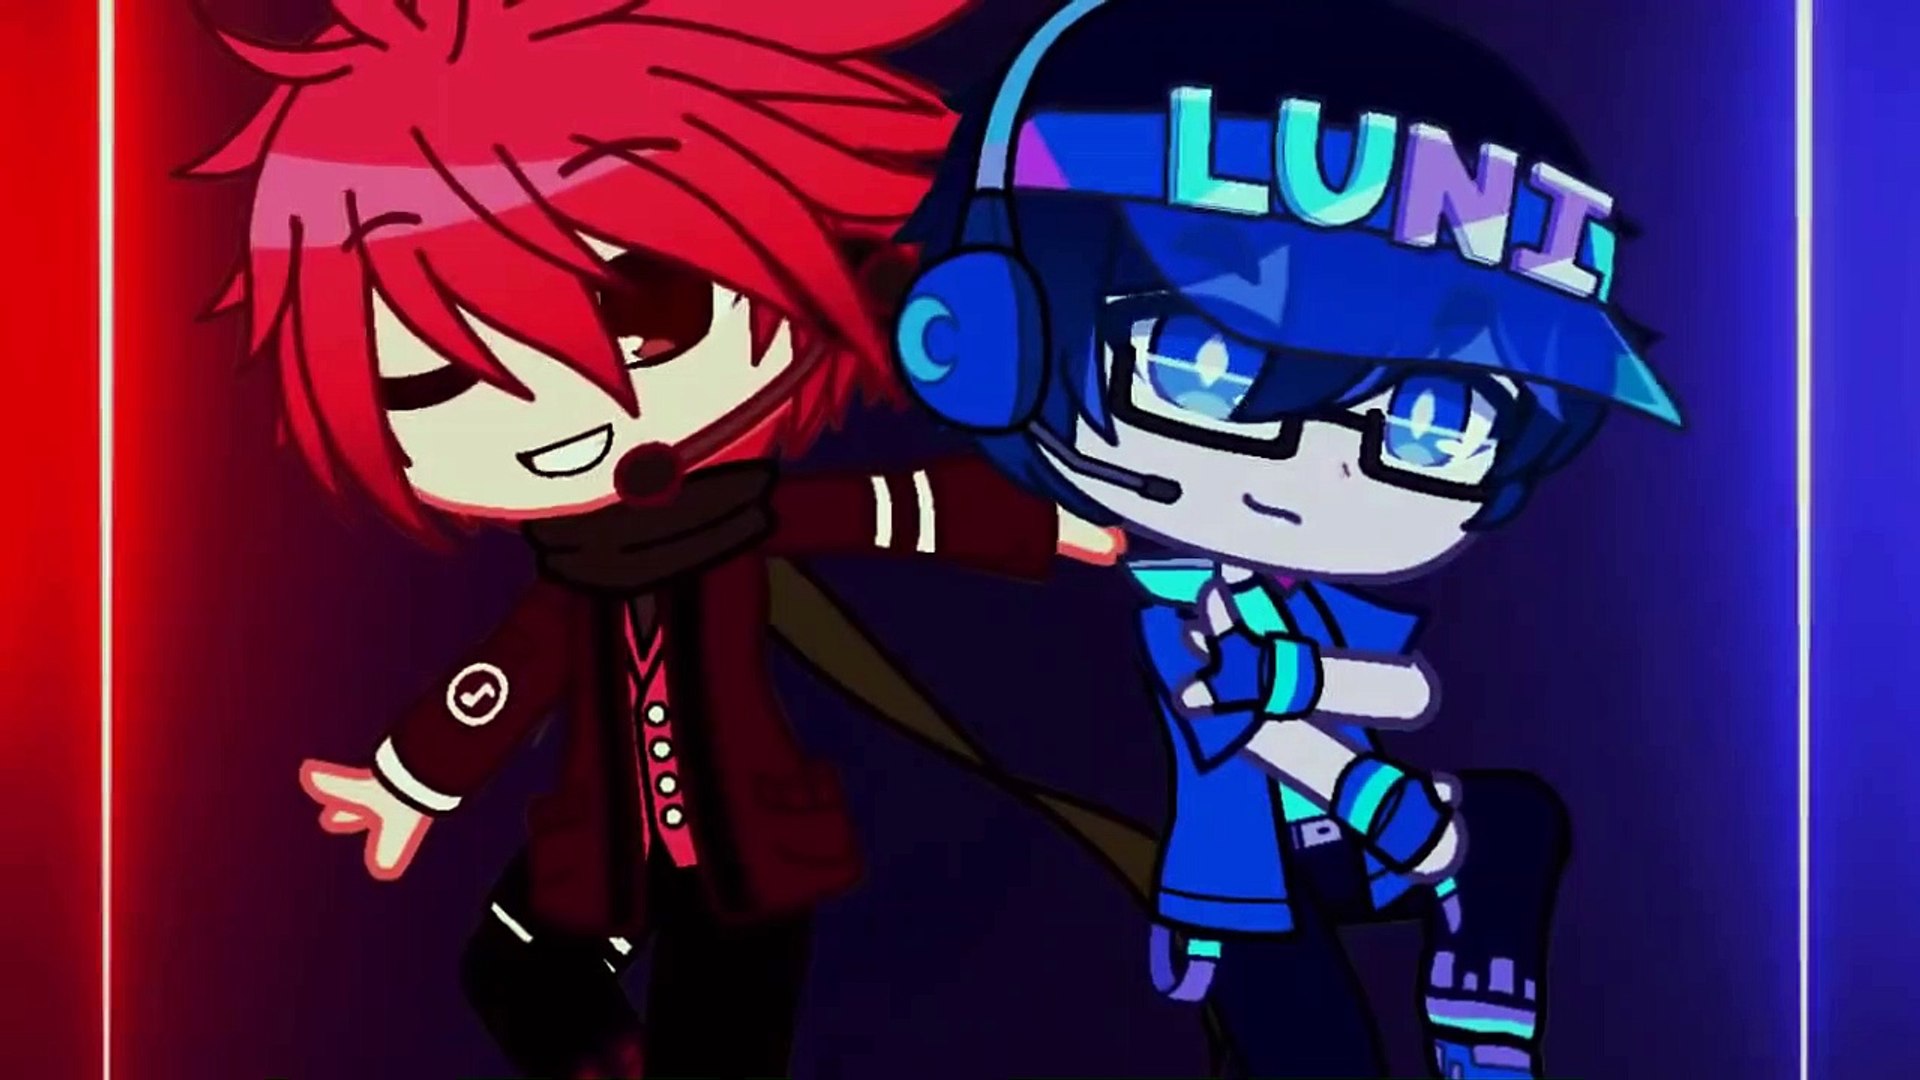 Luni - Gacha Club to anime!, Fan-art